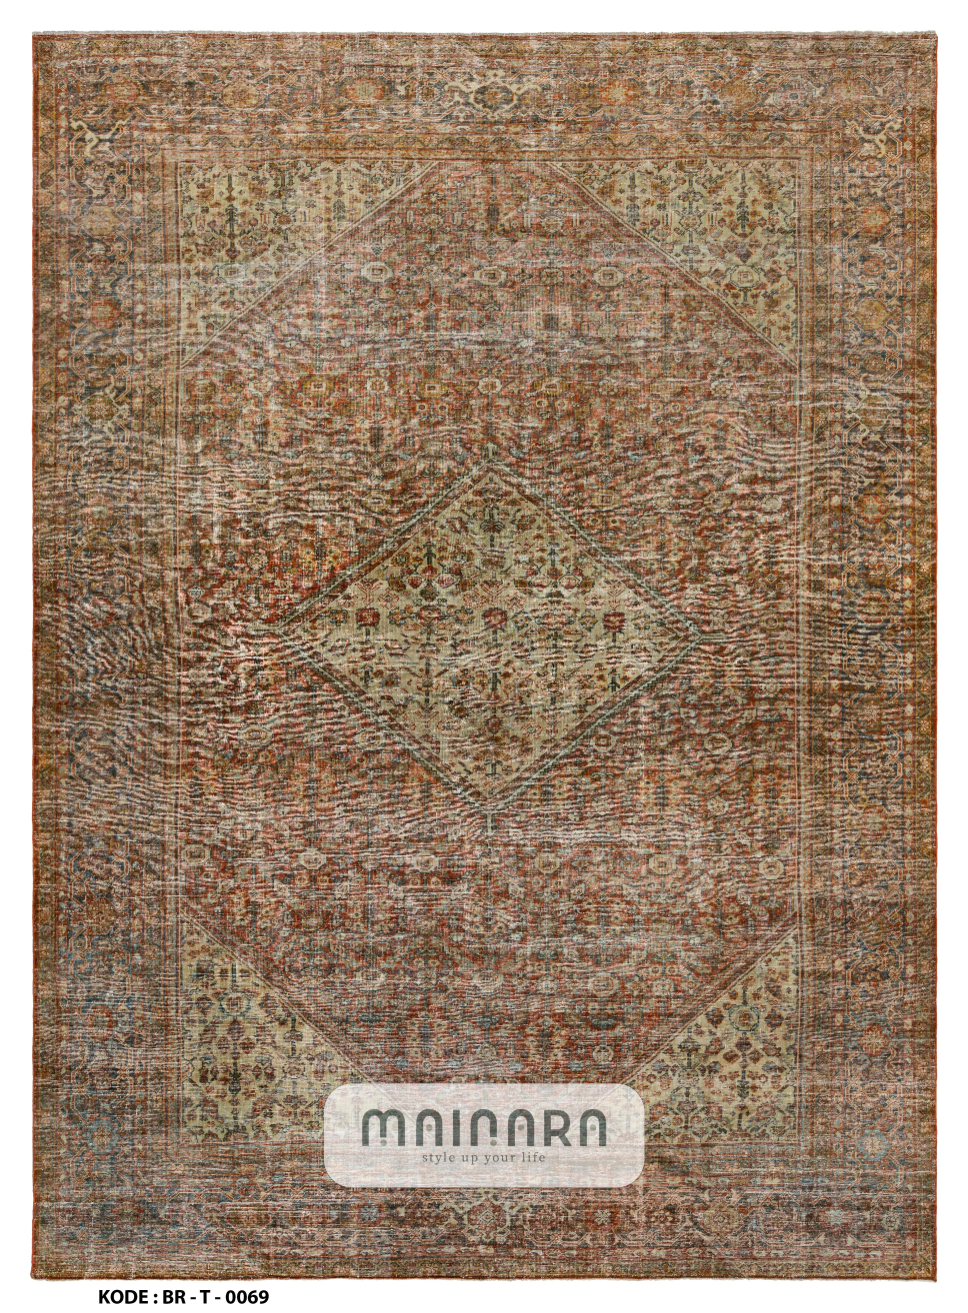 Karpet Tradisional (BR-T-0069) - Brown